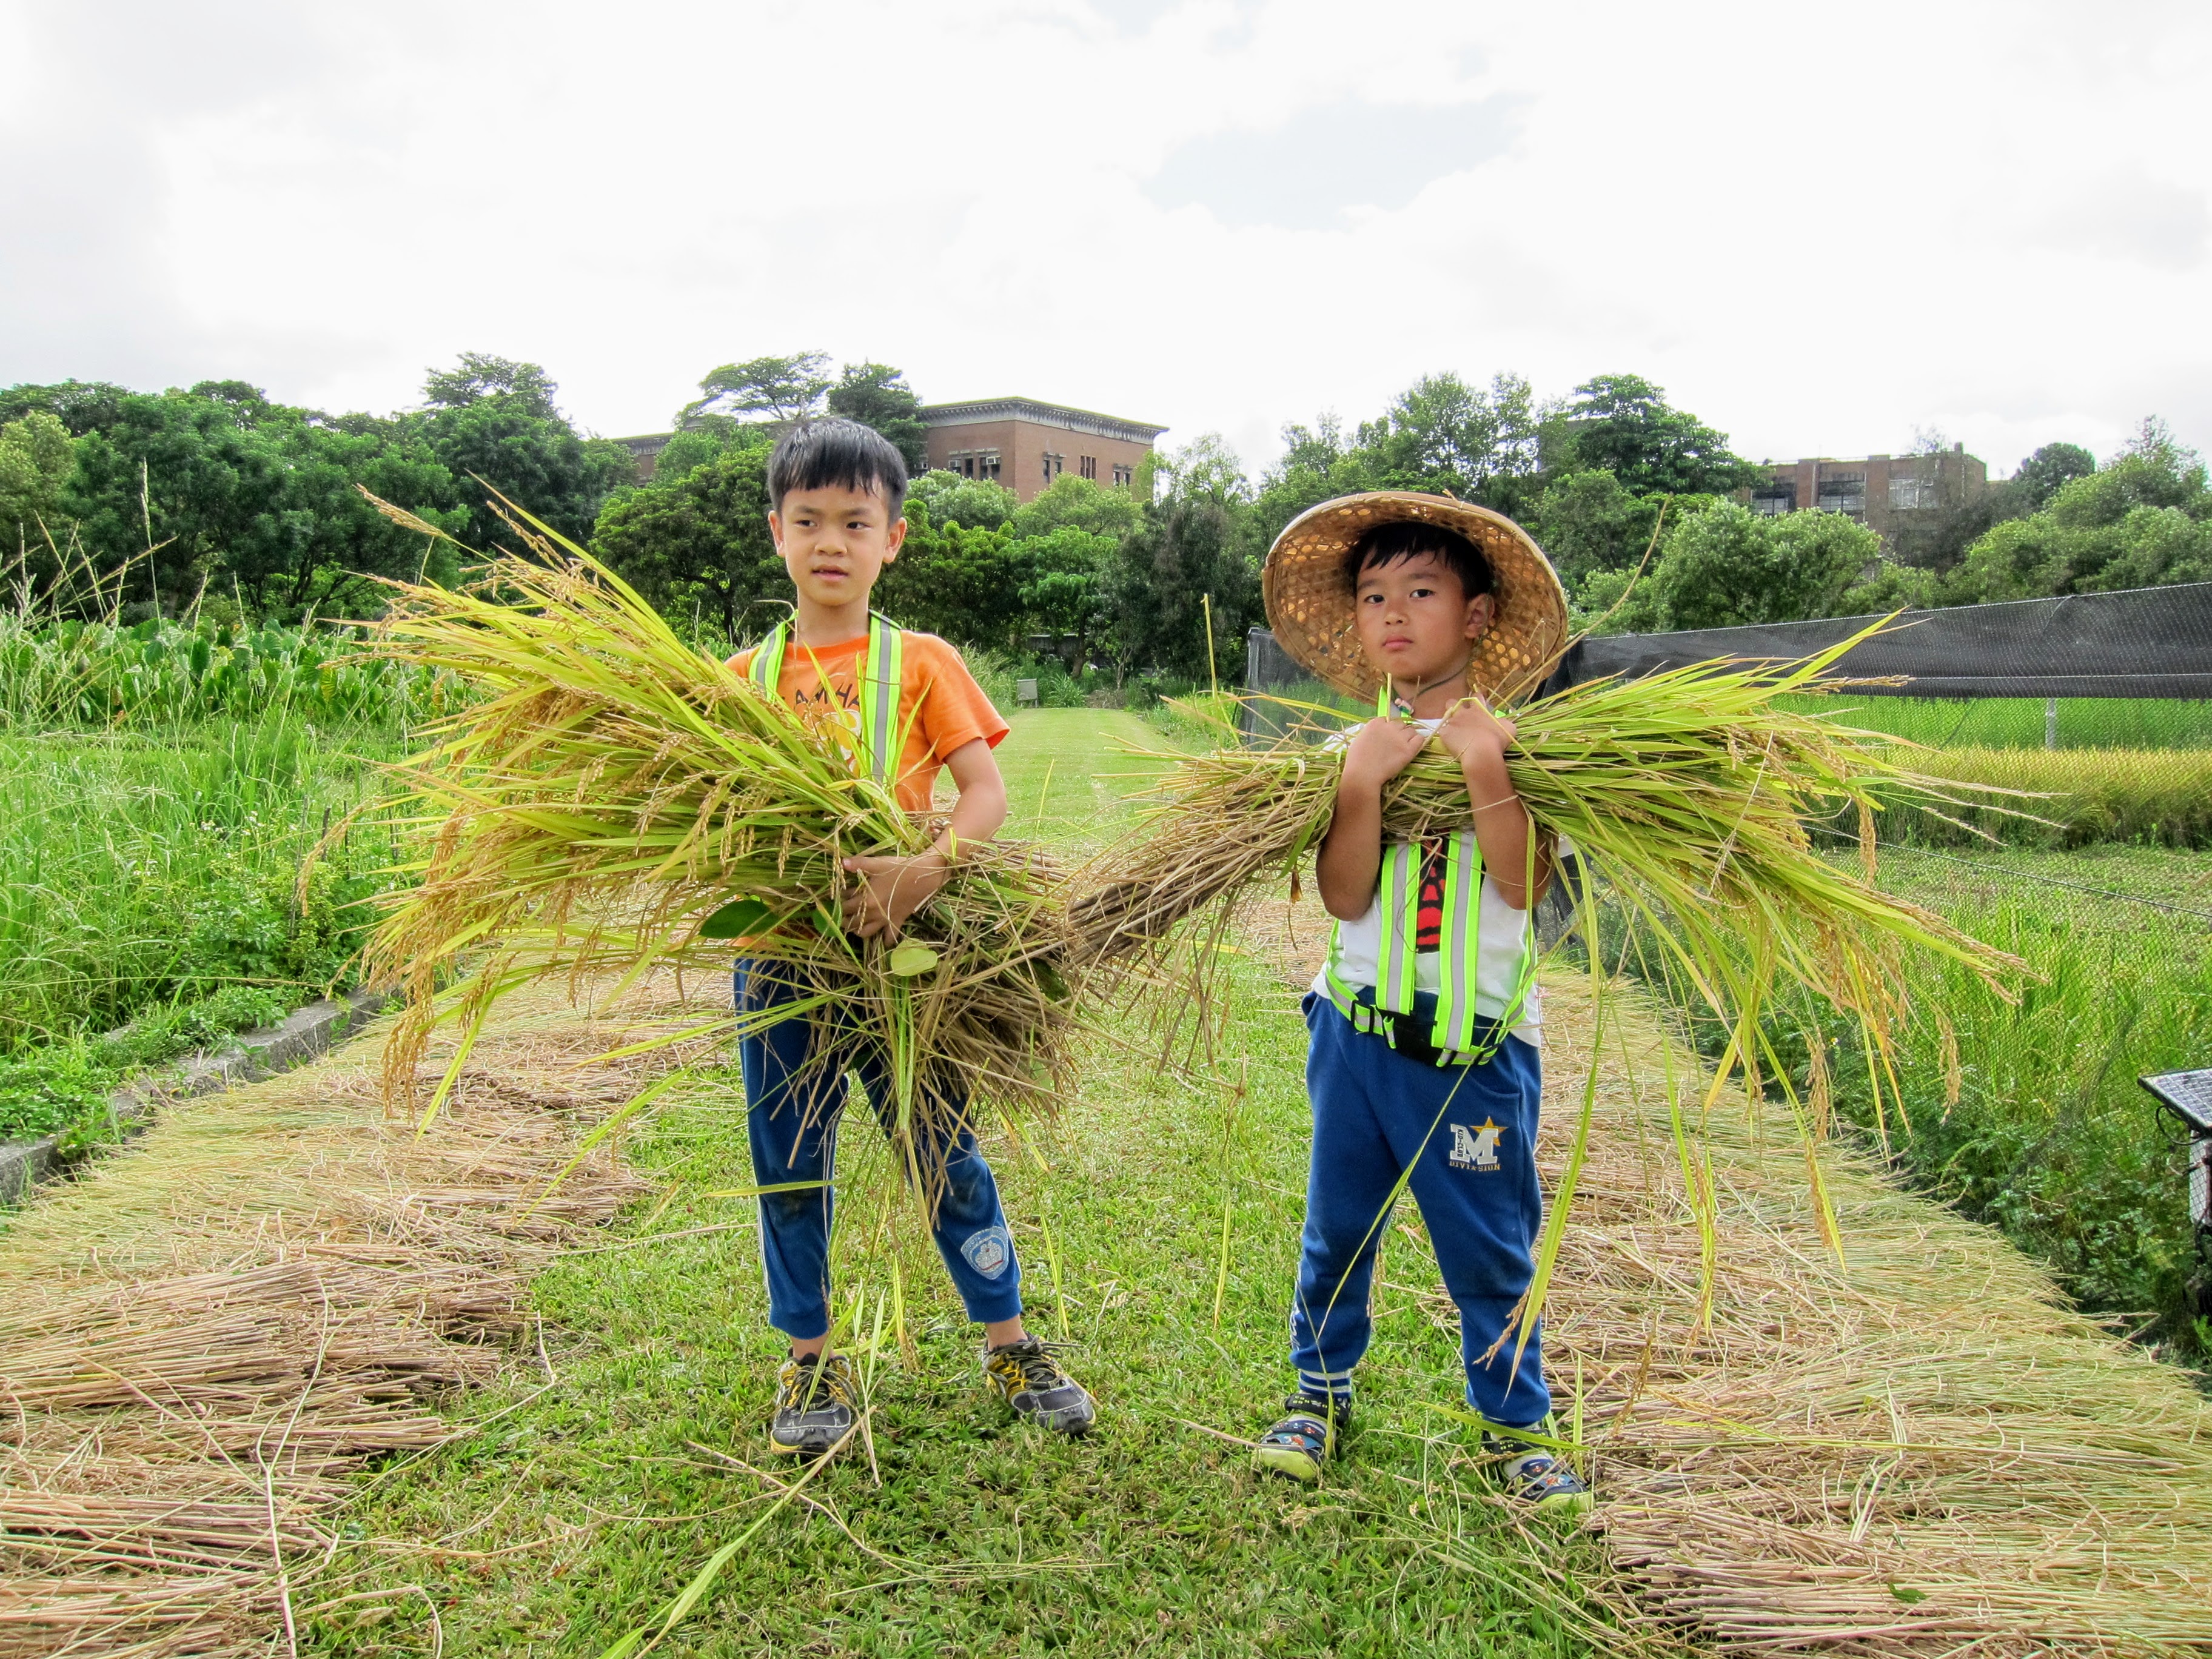 建 蓁 環 境 教 育 基 金 會 帶 領 小 朋 友 體 驗 種 稻 瞭 解 米 食 文 化 